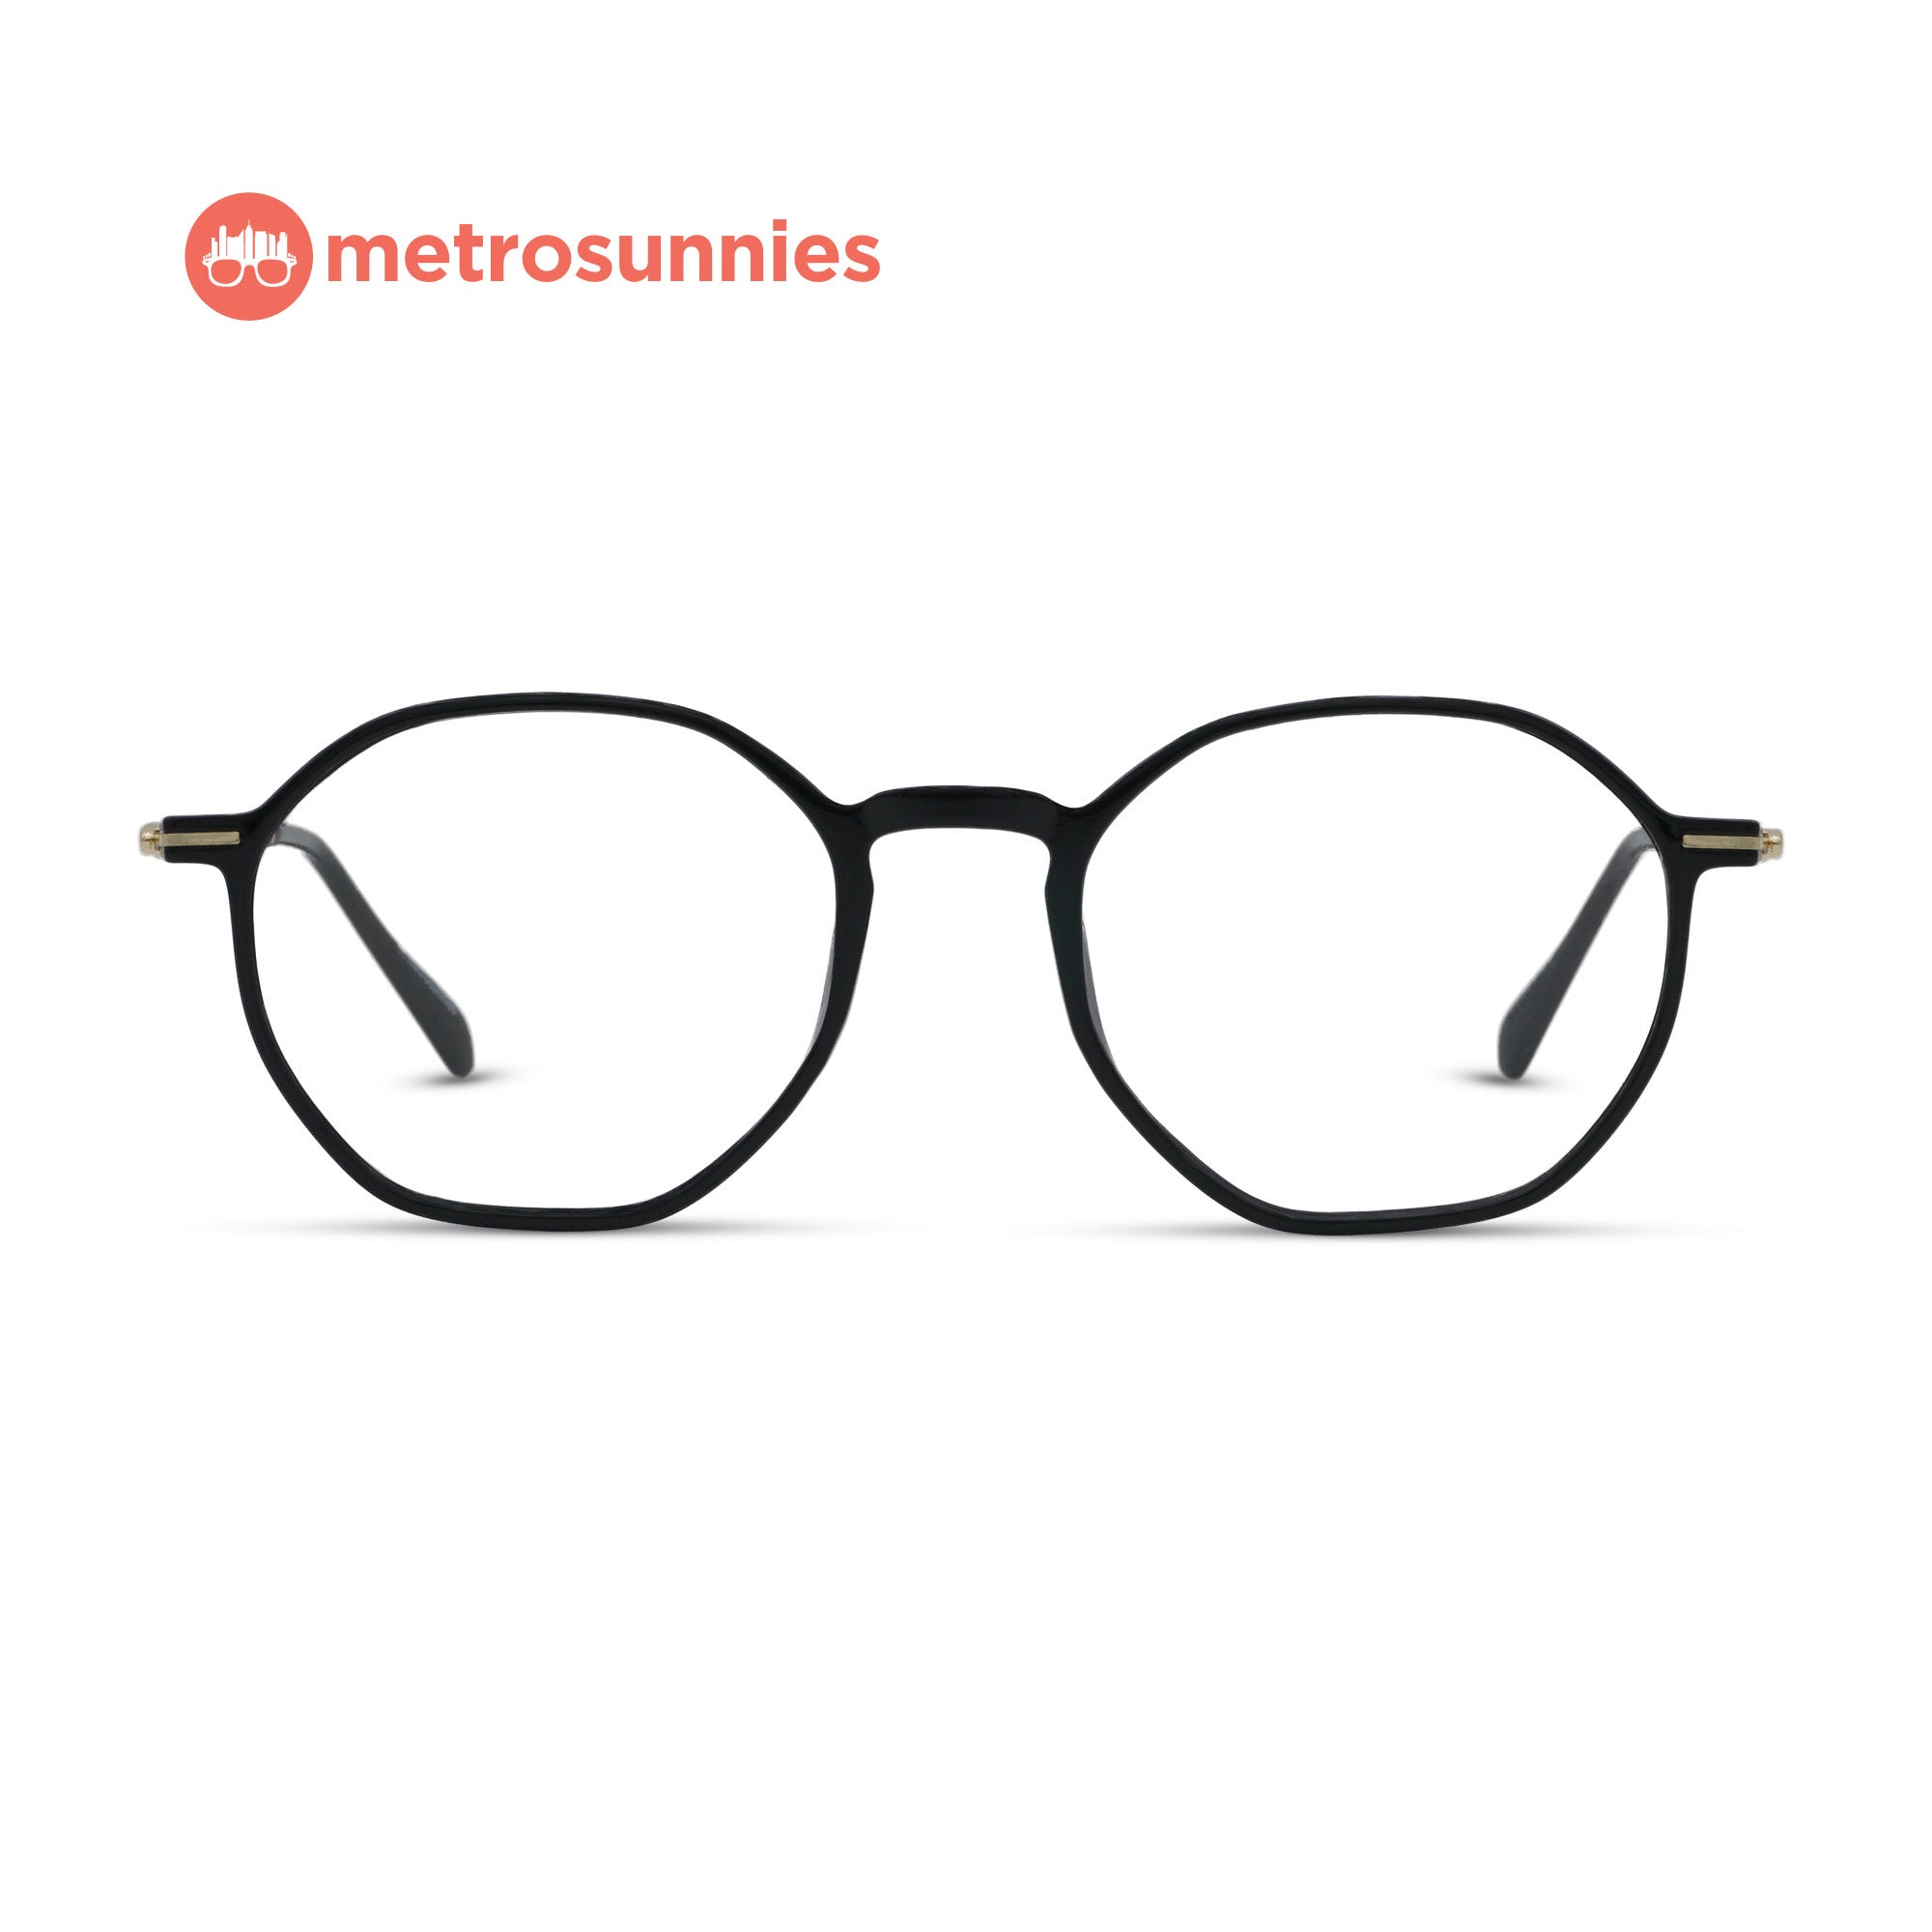 MetroSunnies Maddox Specs (Black) / Replaceable Lens / Versairy Ultralight Weight / Eyeglasses